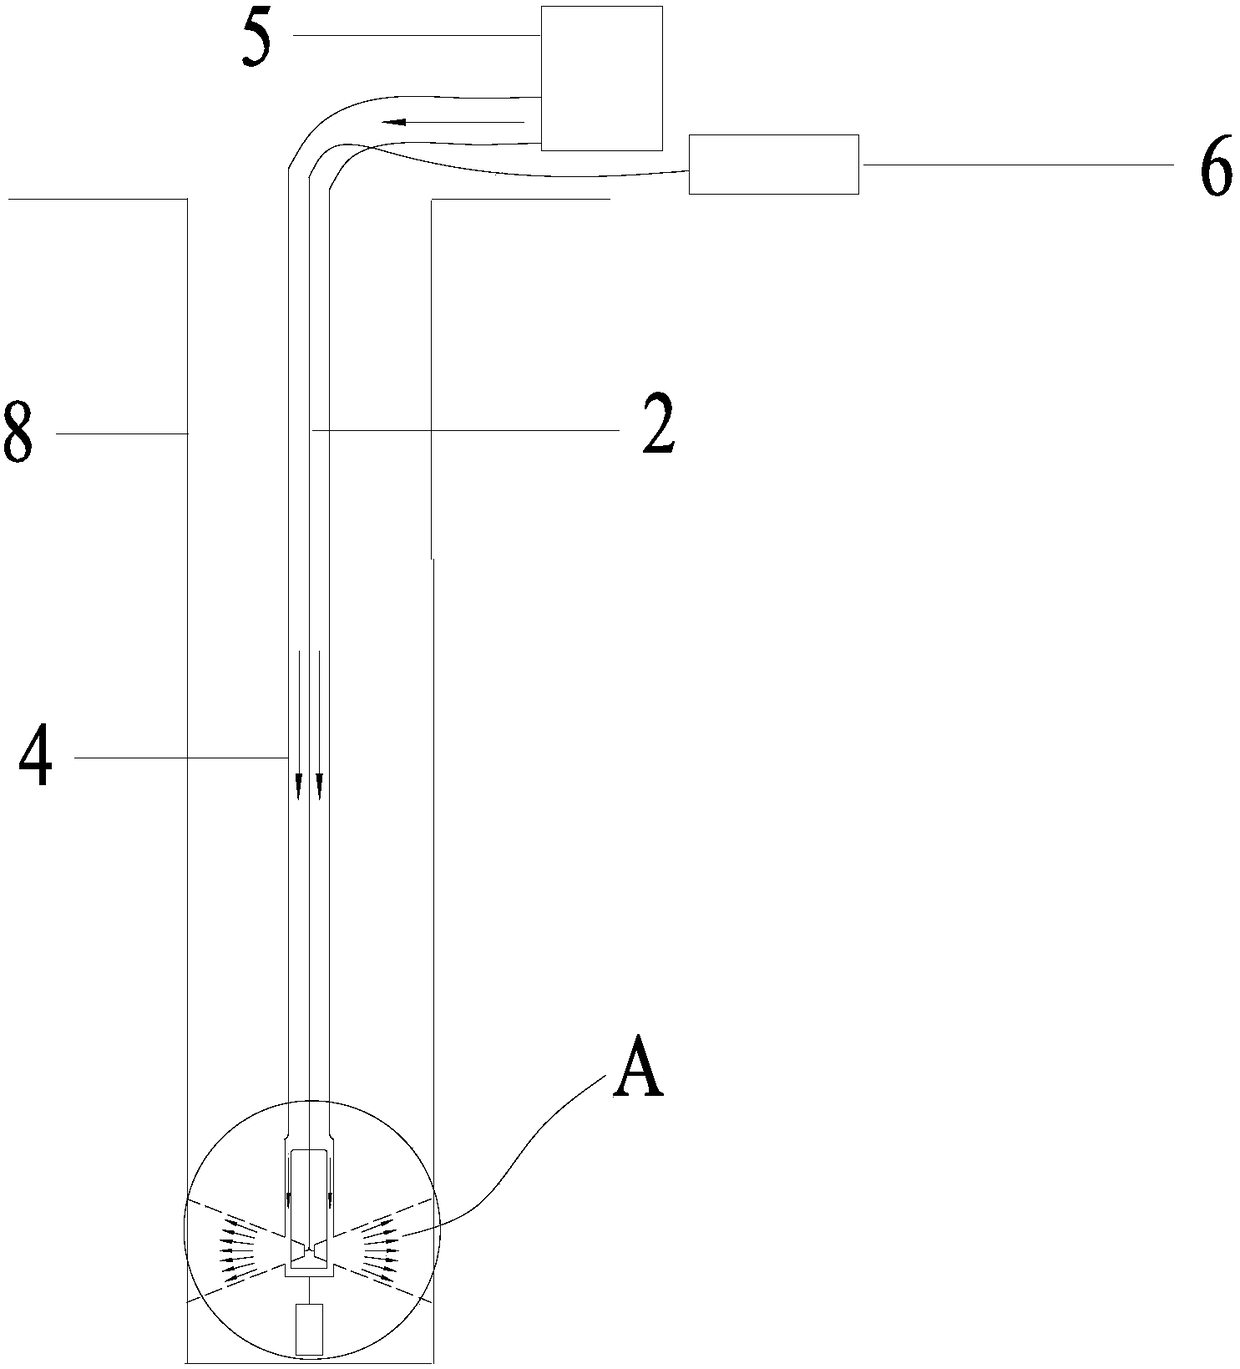 A high-temperature blasthole temperature measuring device and a high-temperature blasthole temperature measurement method